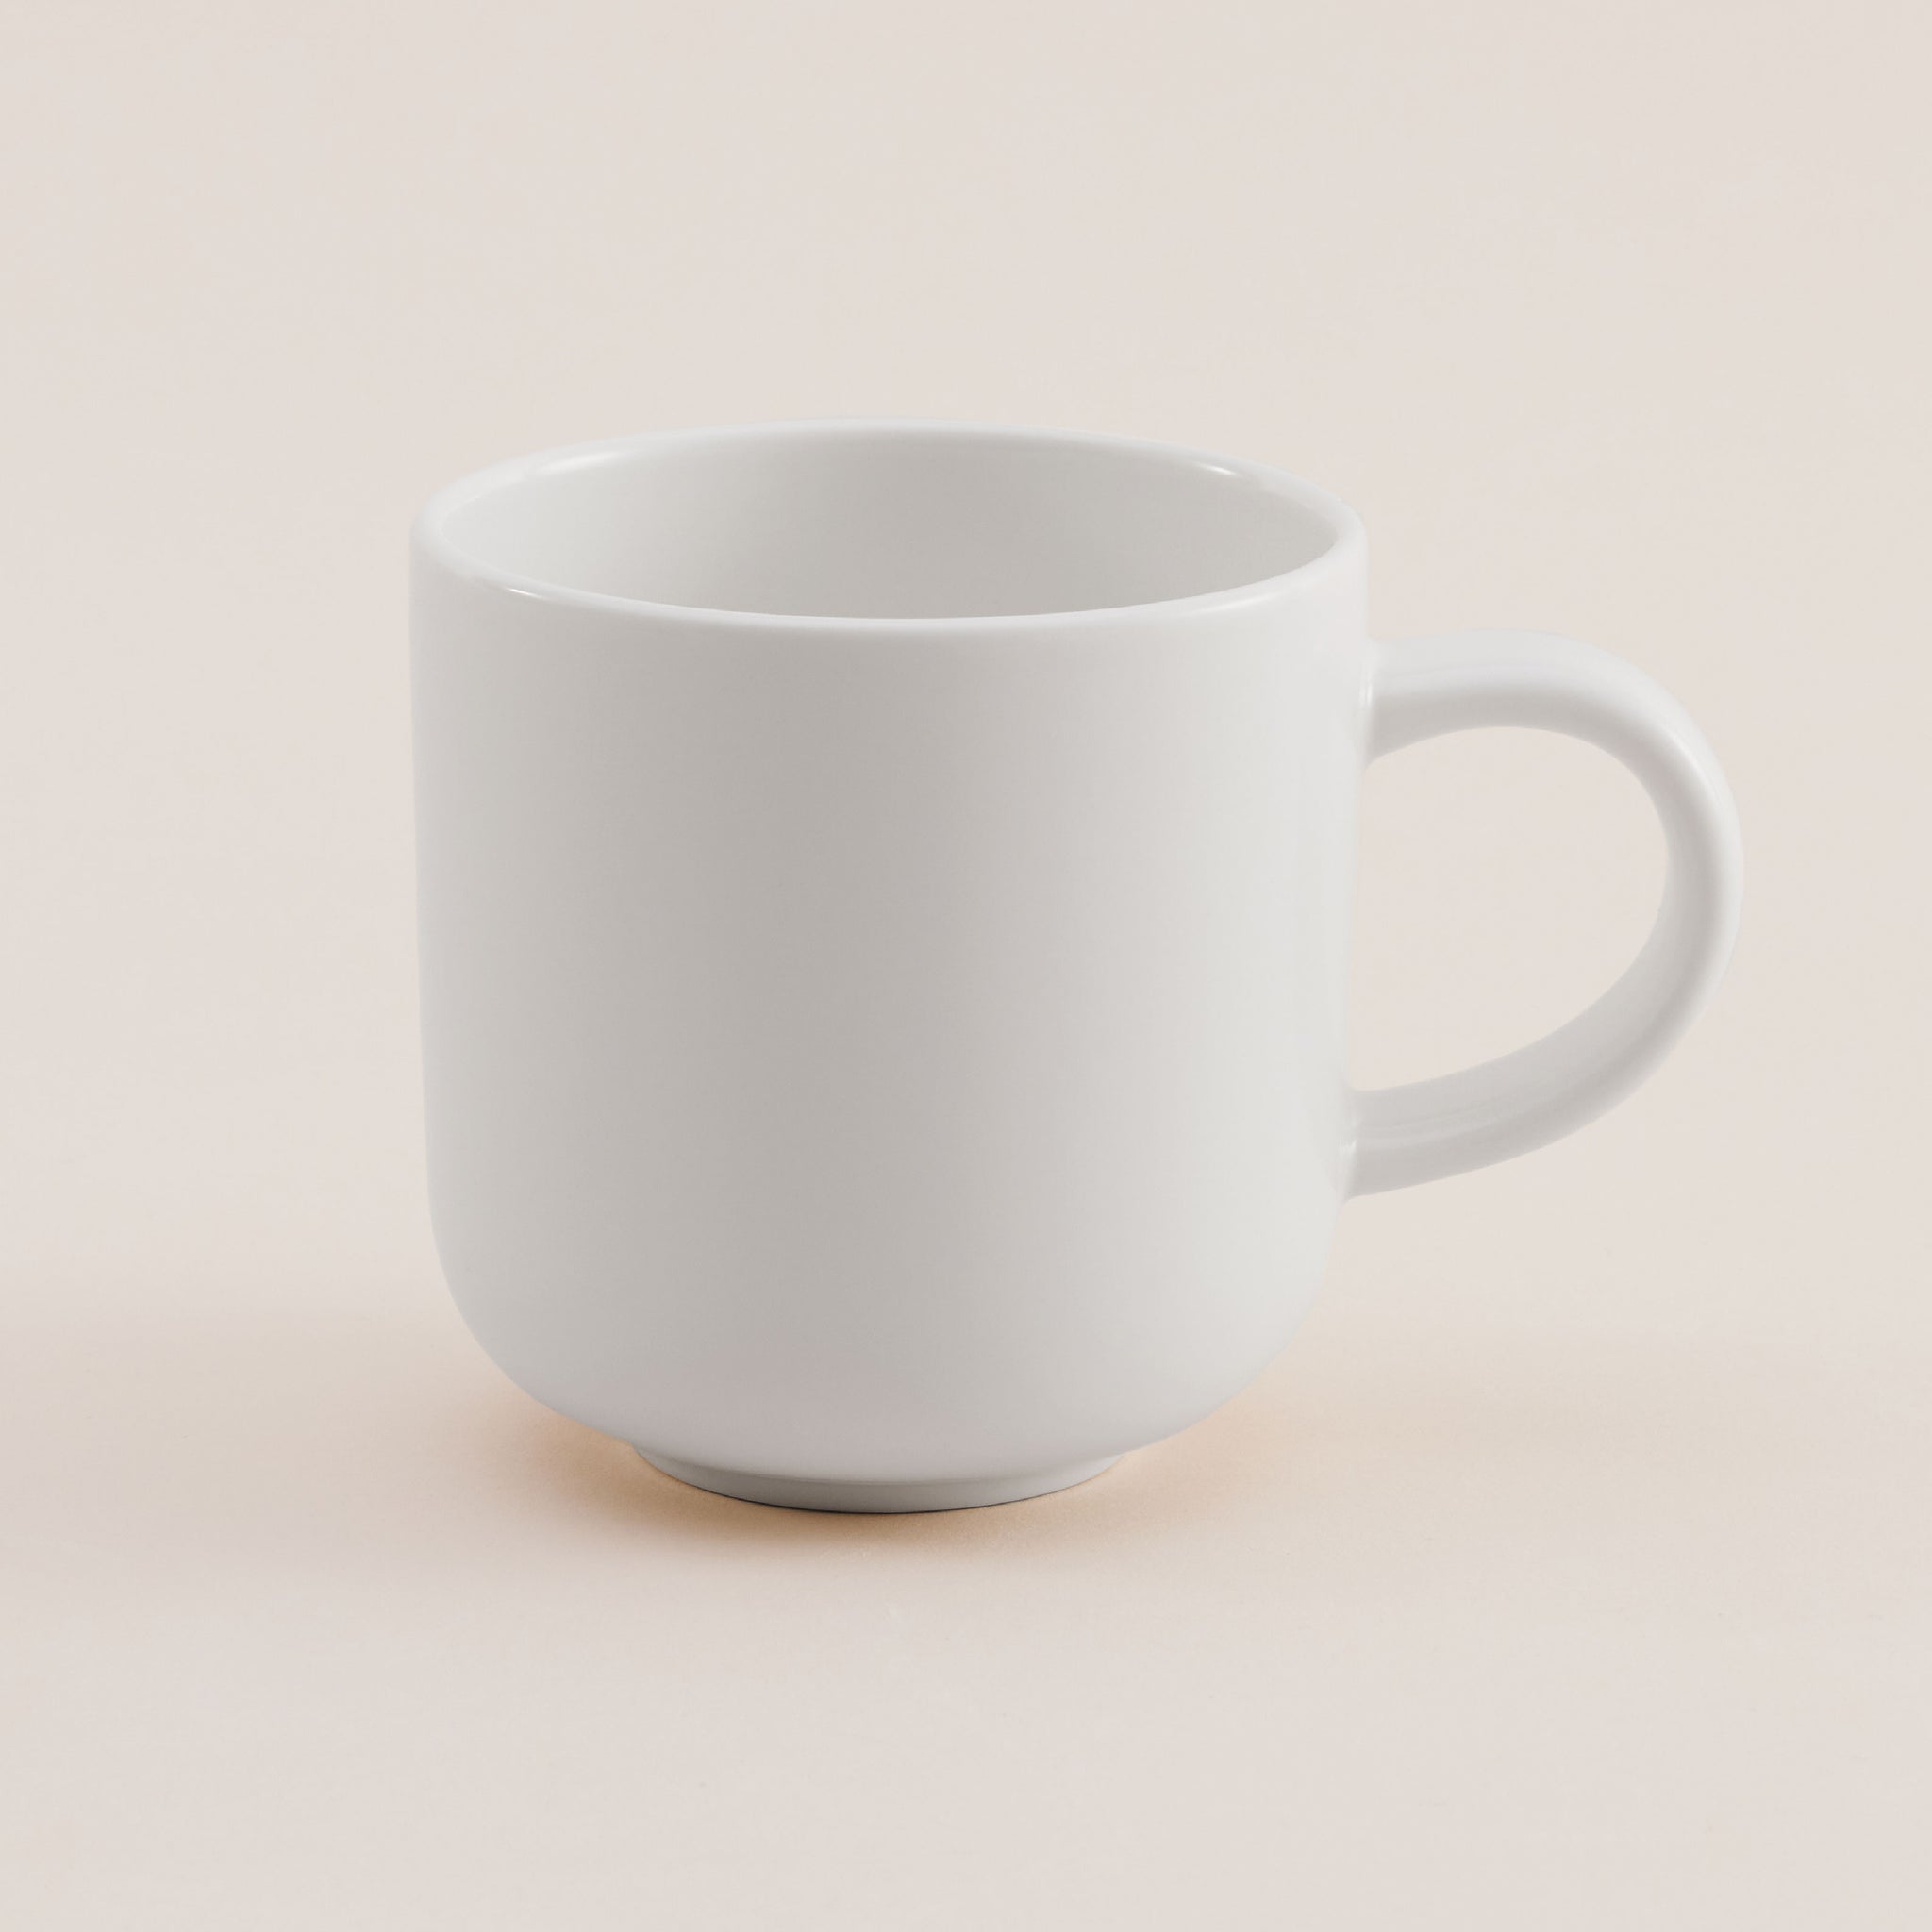 Bowlbowl Retro Ceramic Mug | แก้วมัค